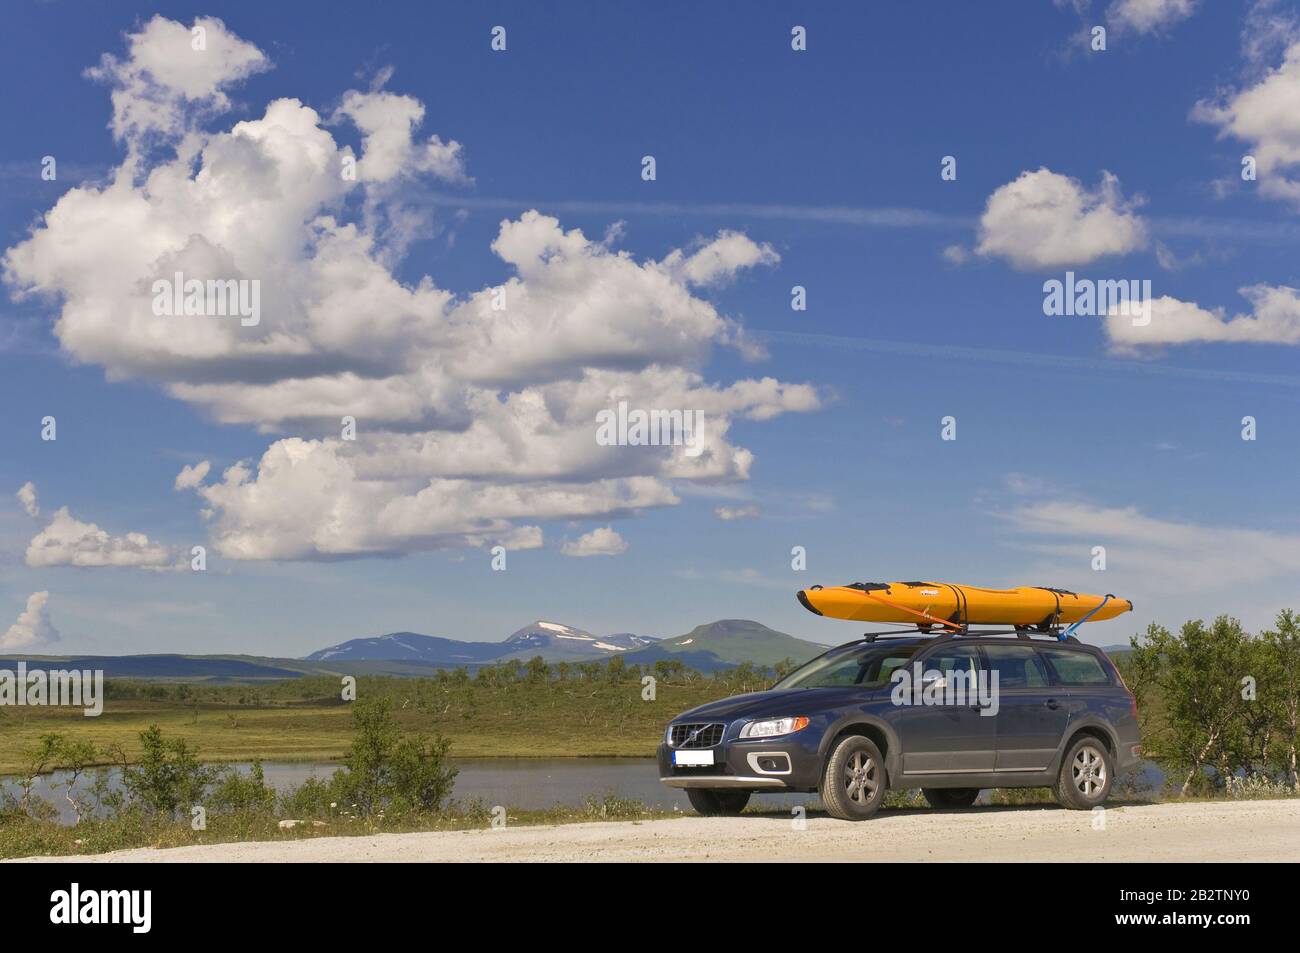 Volvo mit Kajak auf dem Dach Foto Stock